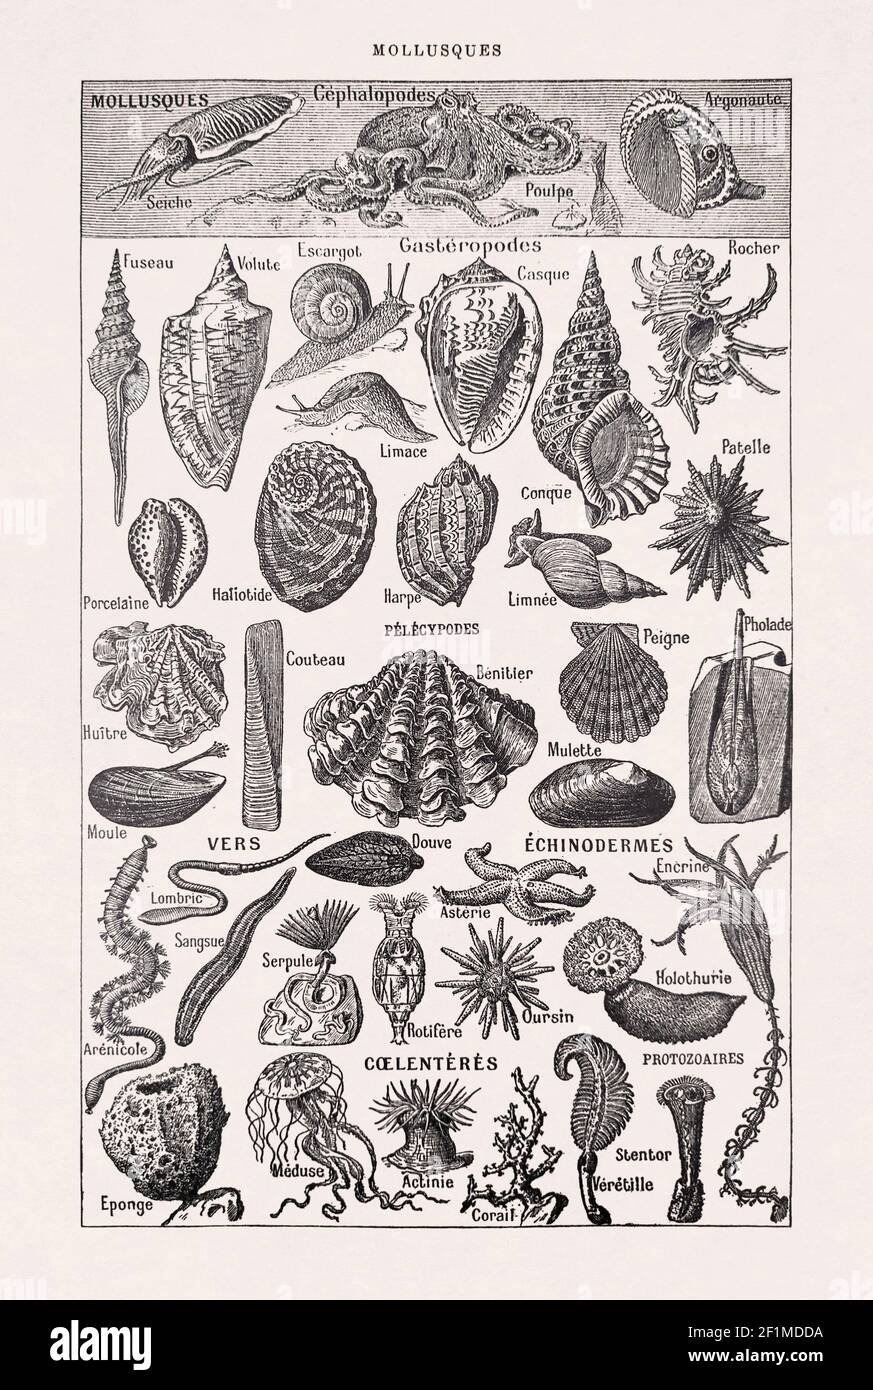 Ancienne illustration de la vie marine (mollusques, vers, échinodermes, coelentérats et infusoria) par Millot & Demoulin dans le dictionnaire français 'dict Banque D'Images